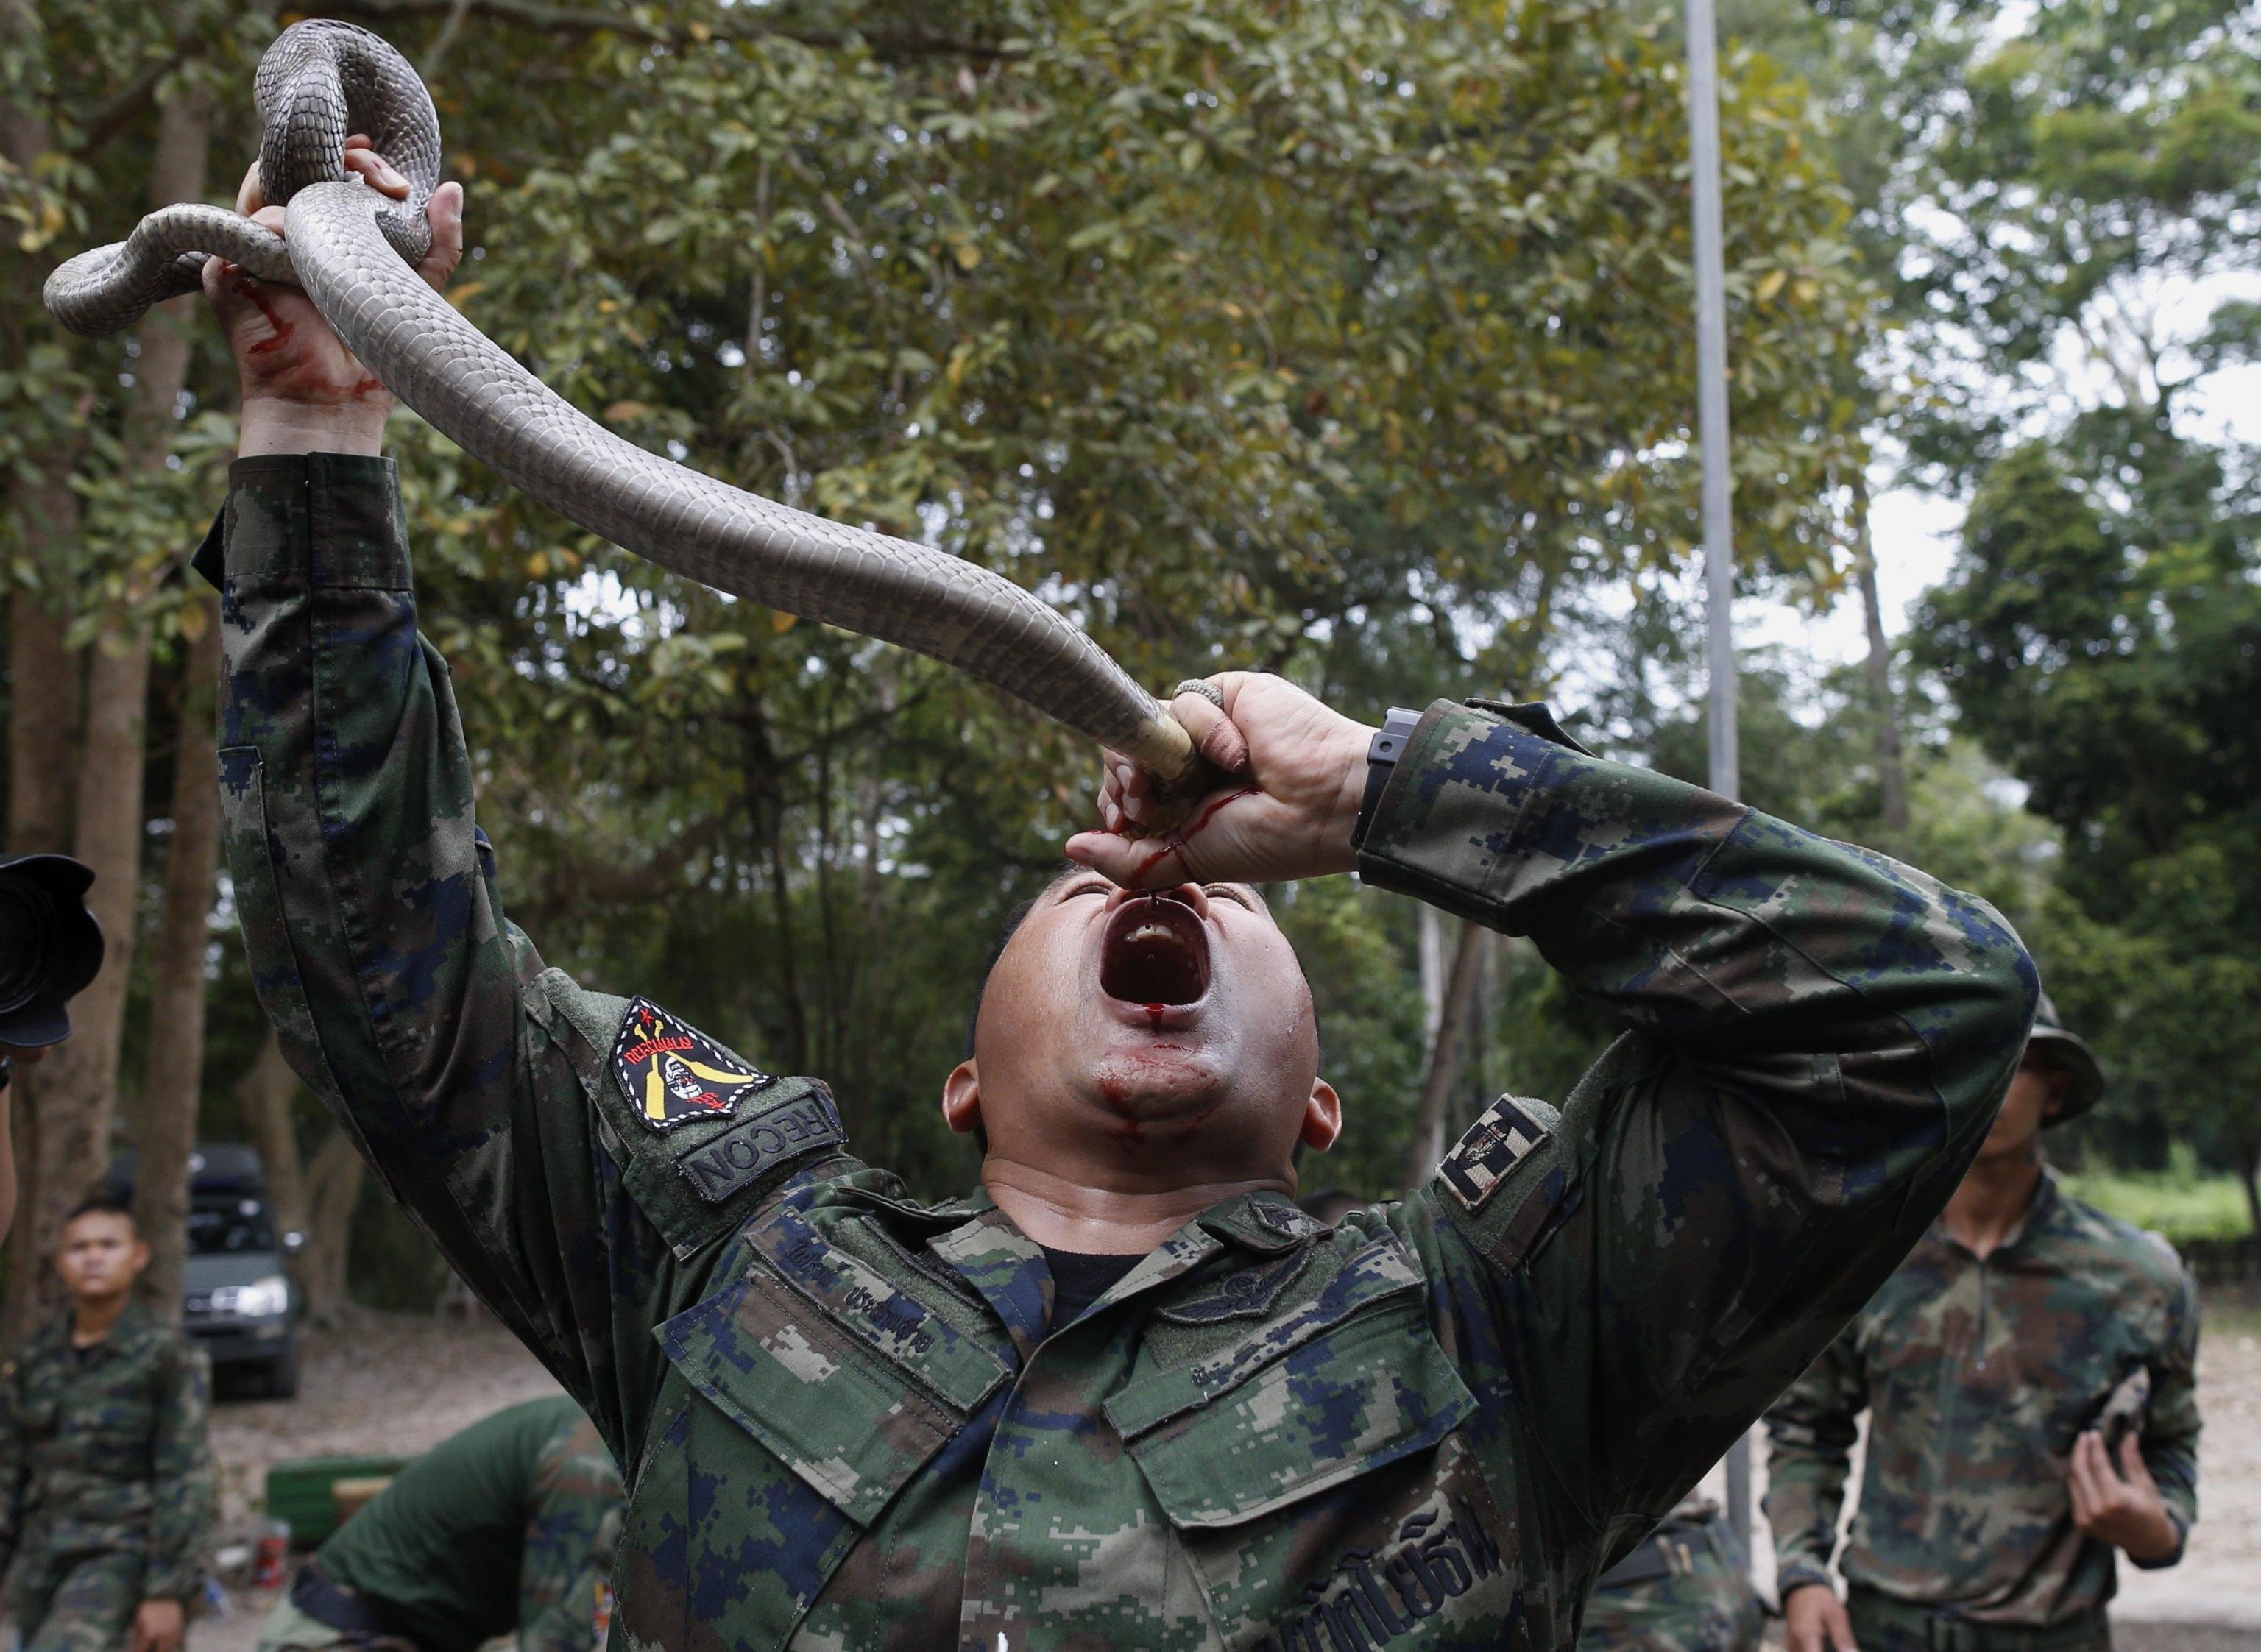 Istruttore thailandese mostra ai soldati come bere il sangue dei cobra